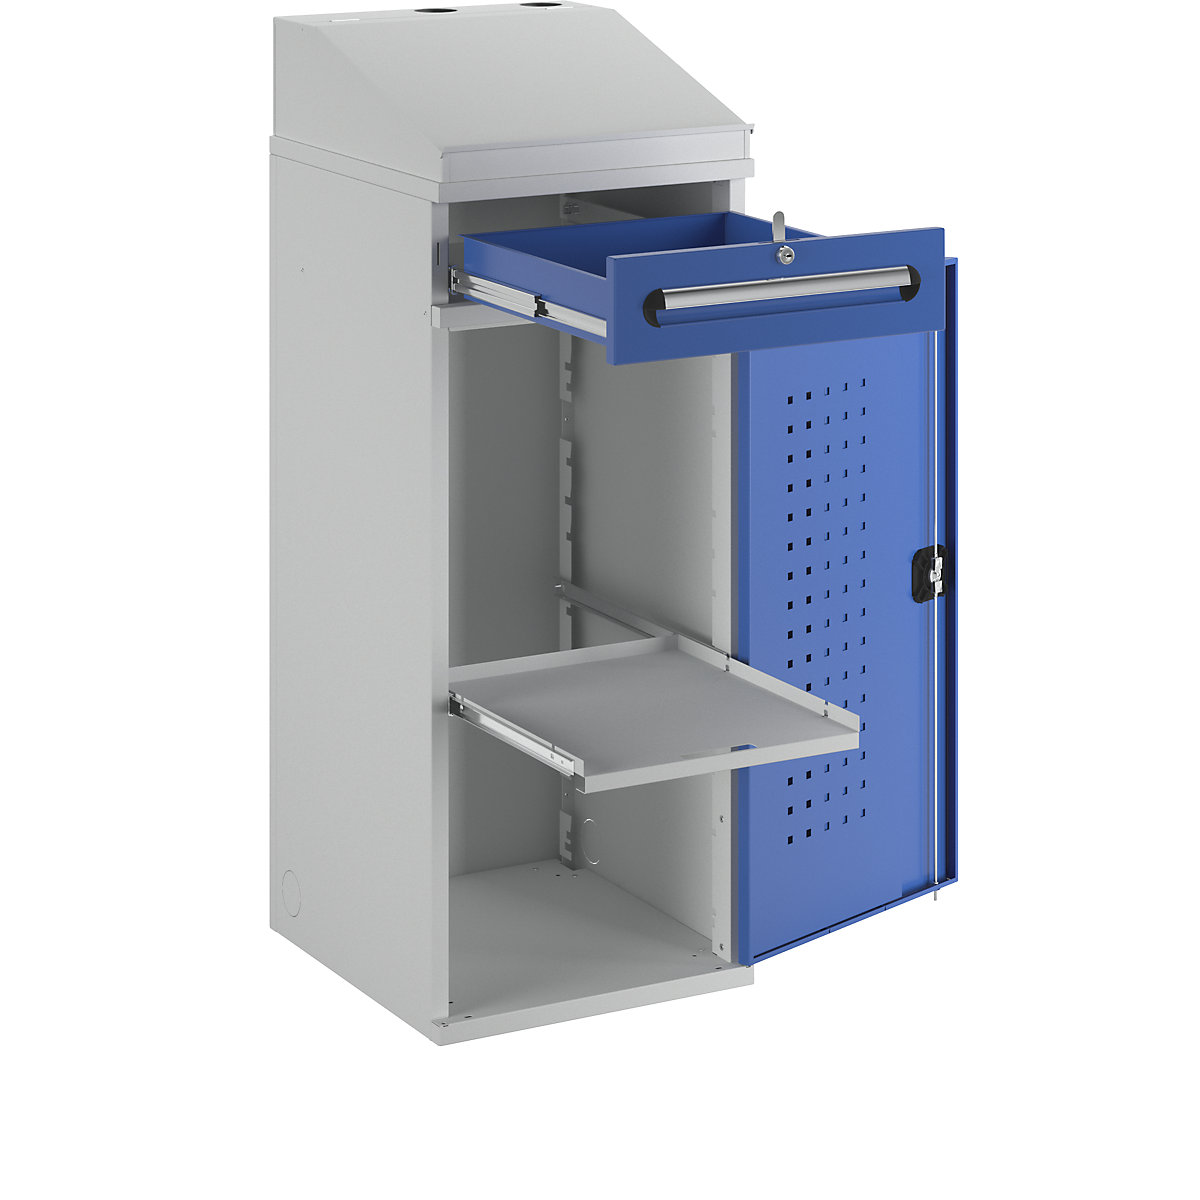 Scrivinpiedi per uso industriale – RAU, con 1 cassetto sopra l'armadio, larghezza 450 mm, grigio chiaro / blu genziana-14